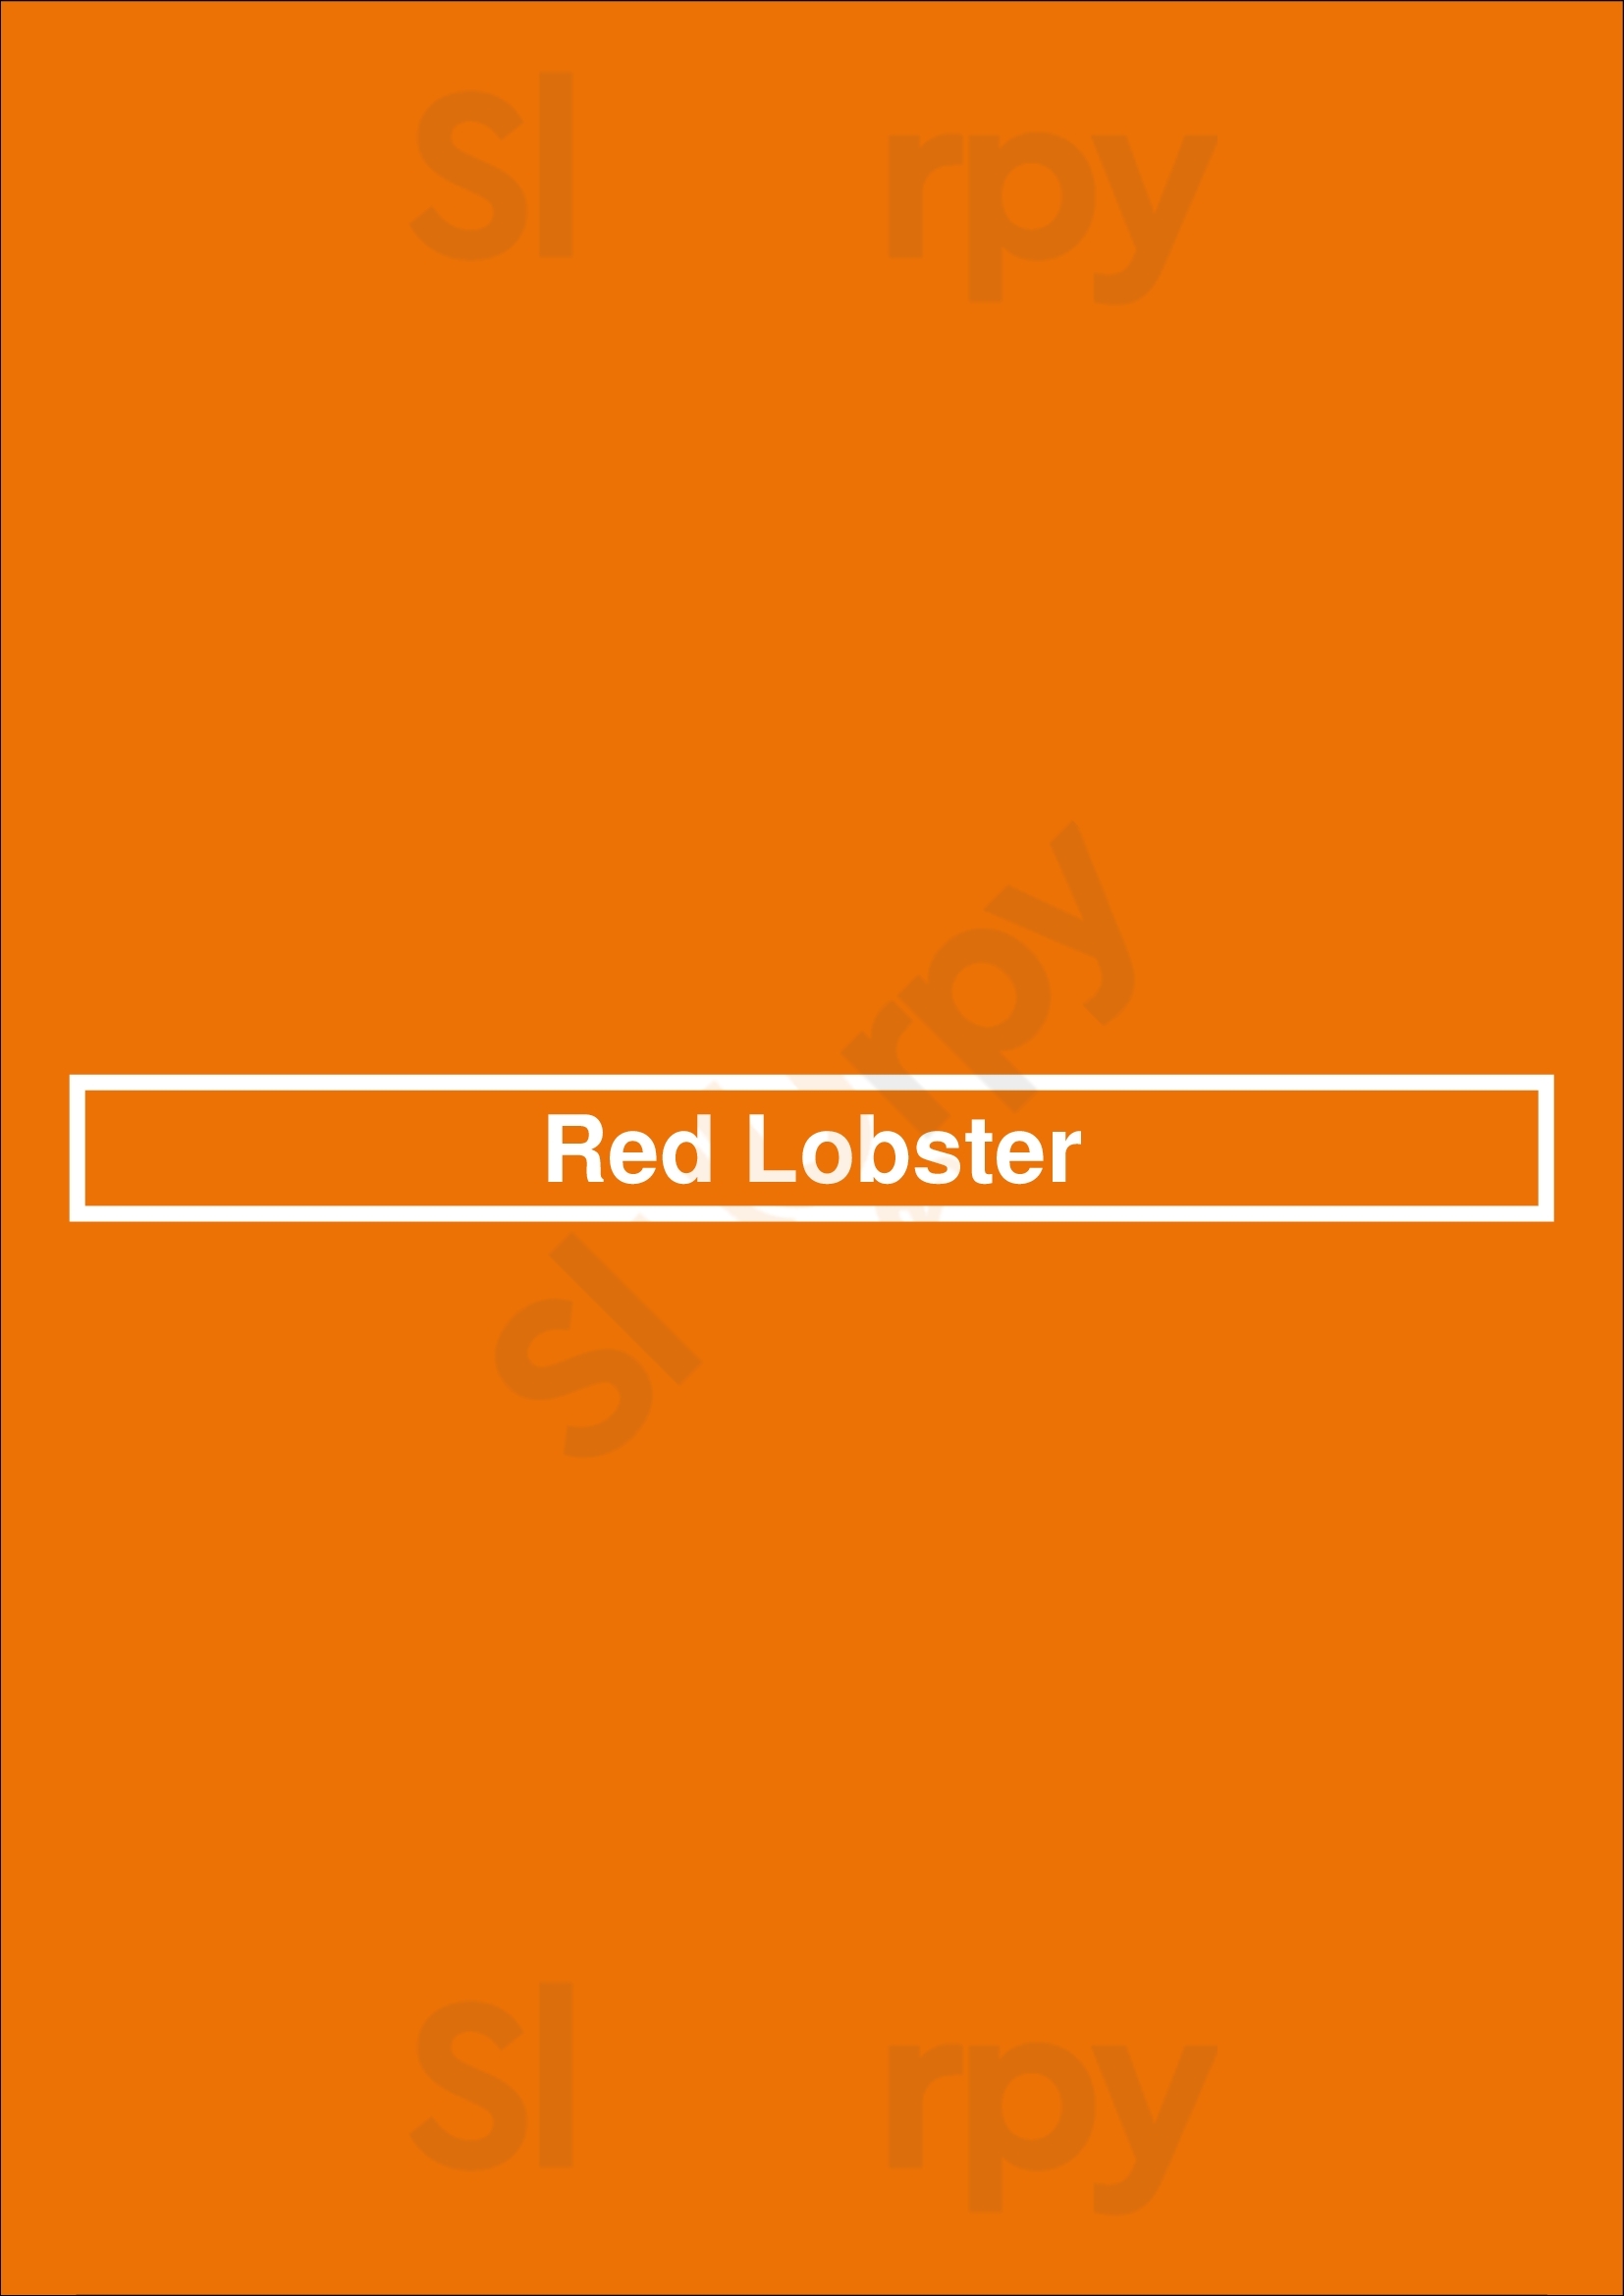 Red Lobster Layton Menu - 1